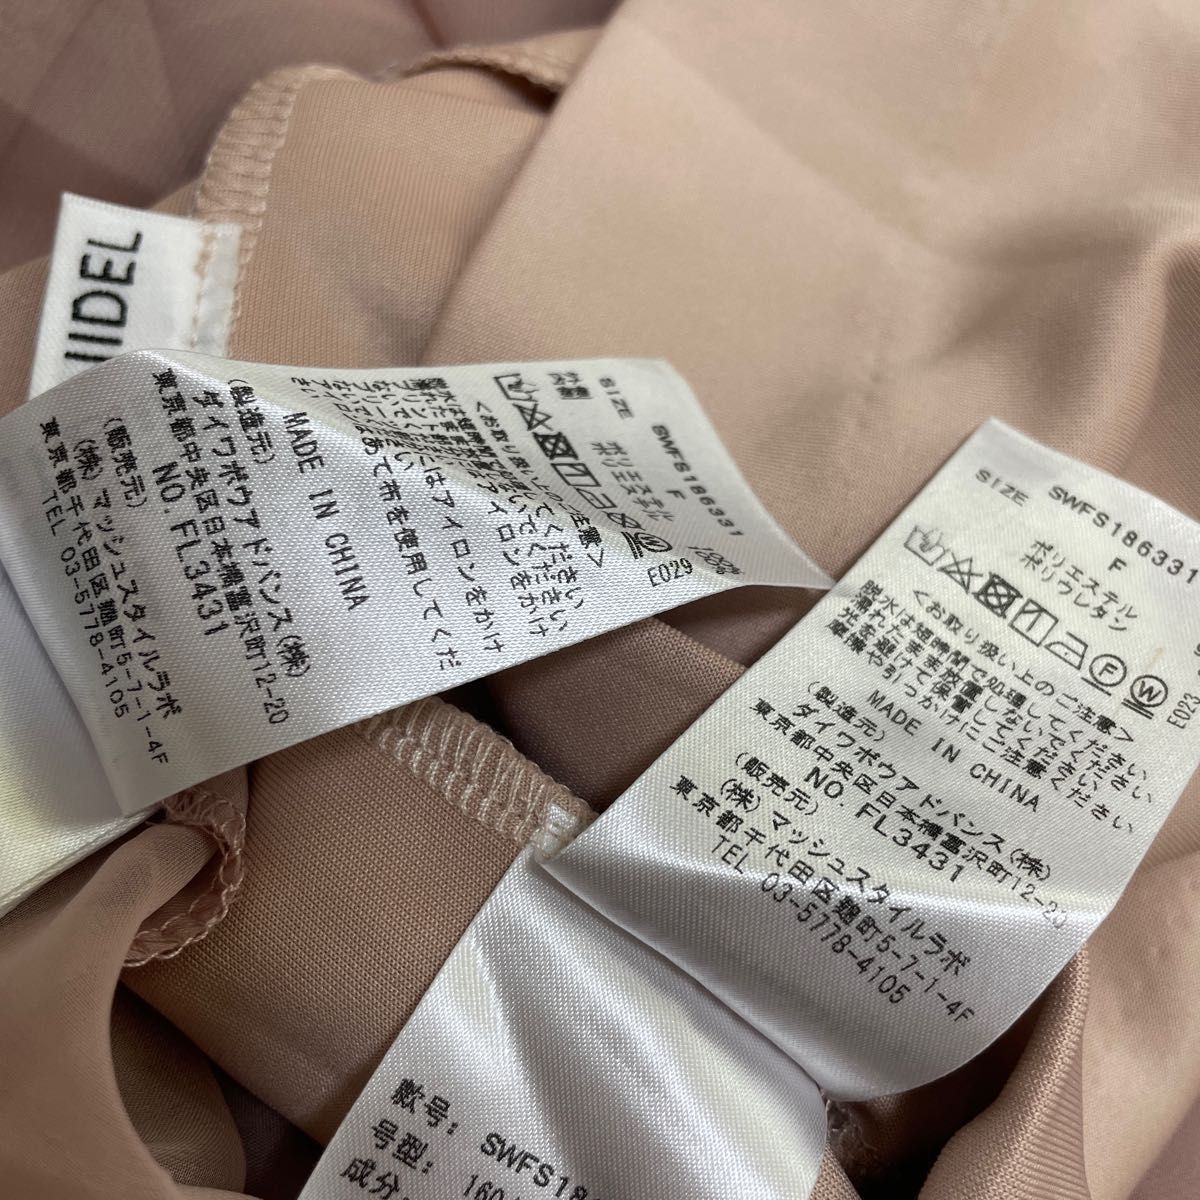 【美品】SNIDEL スナイデル FILAラインスカート ピンク プリーツロングスカート